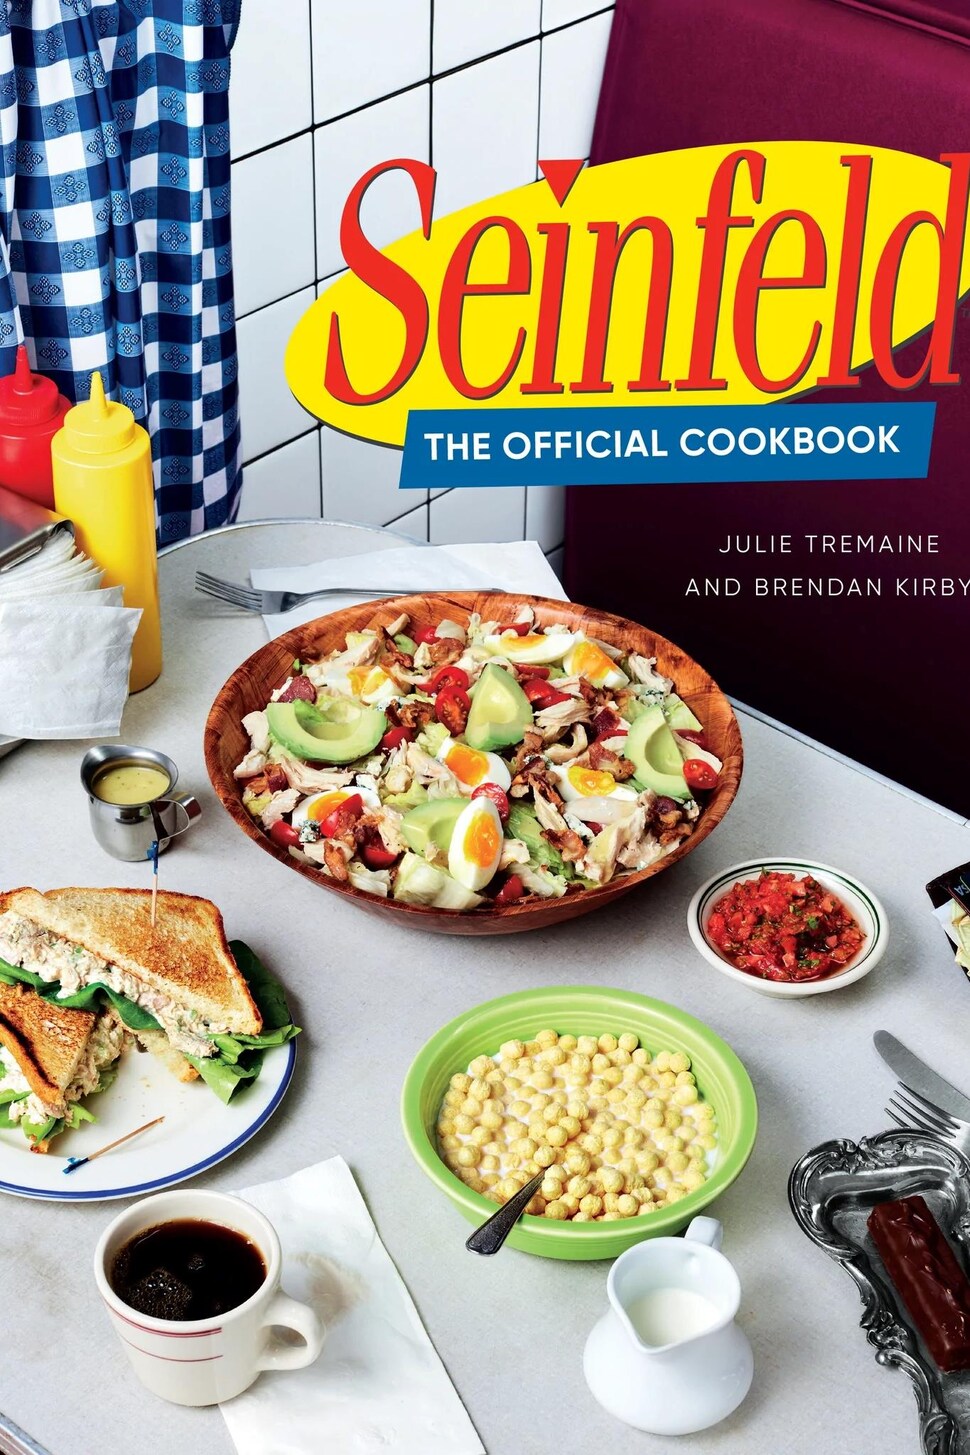 La couverture du livre « Seinfeld, the Official Cookbook ».